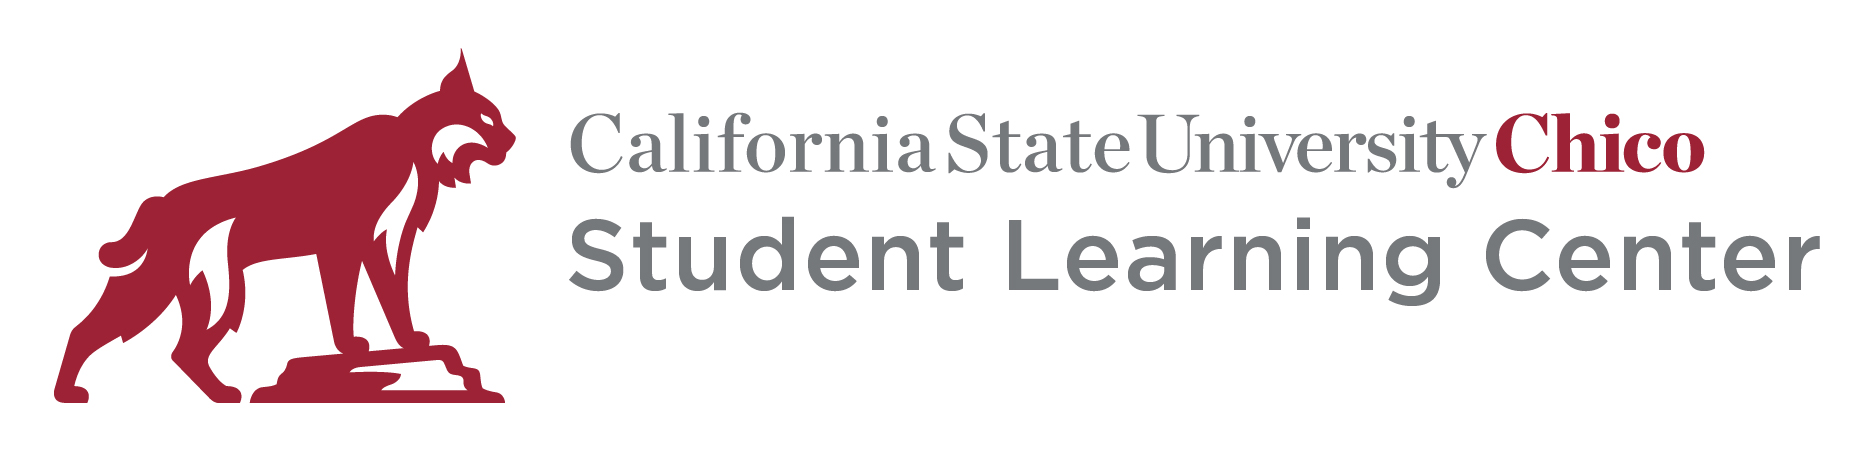 Student Learning Center logo